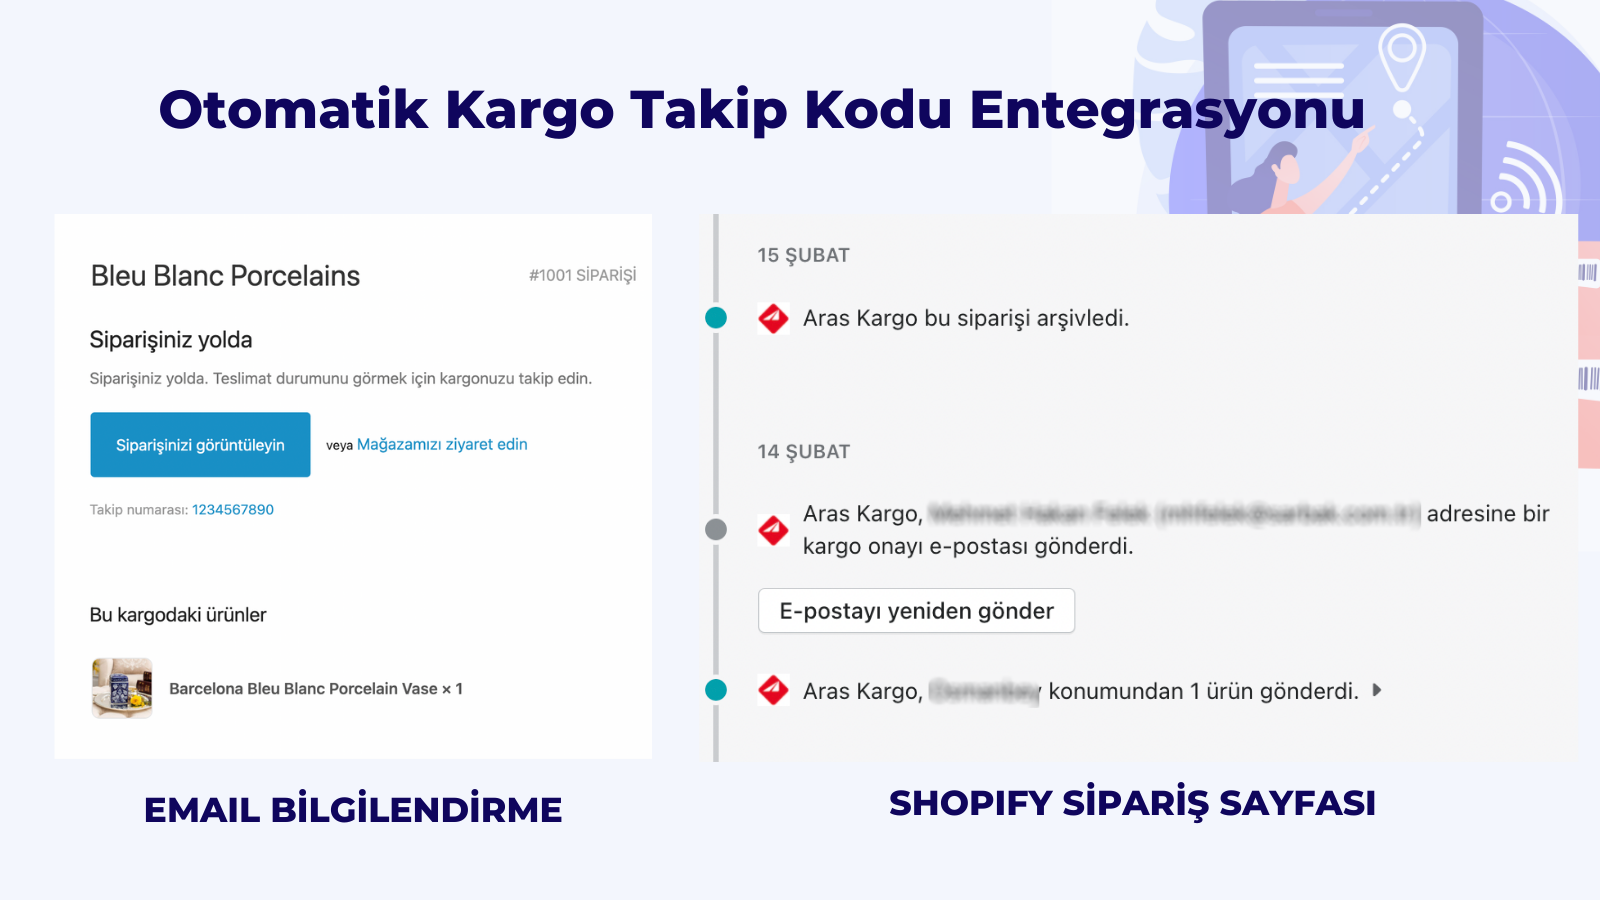 Shopify Aras Kargo Entegrasyon Otomatik Kargo Takip Kodu